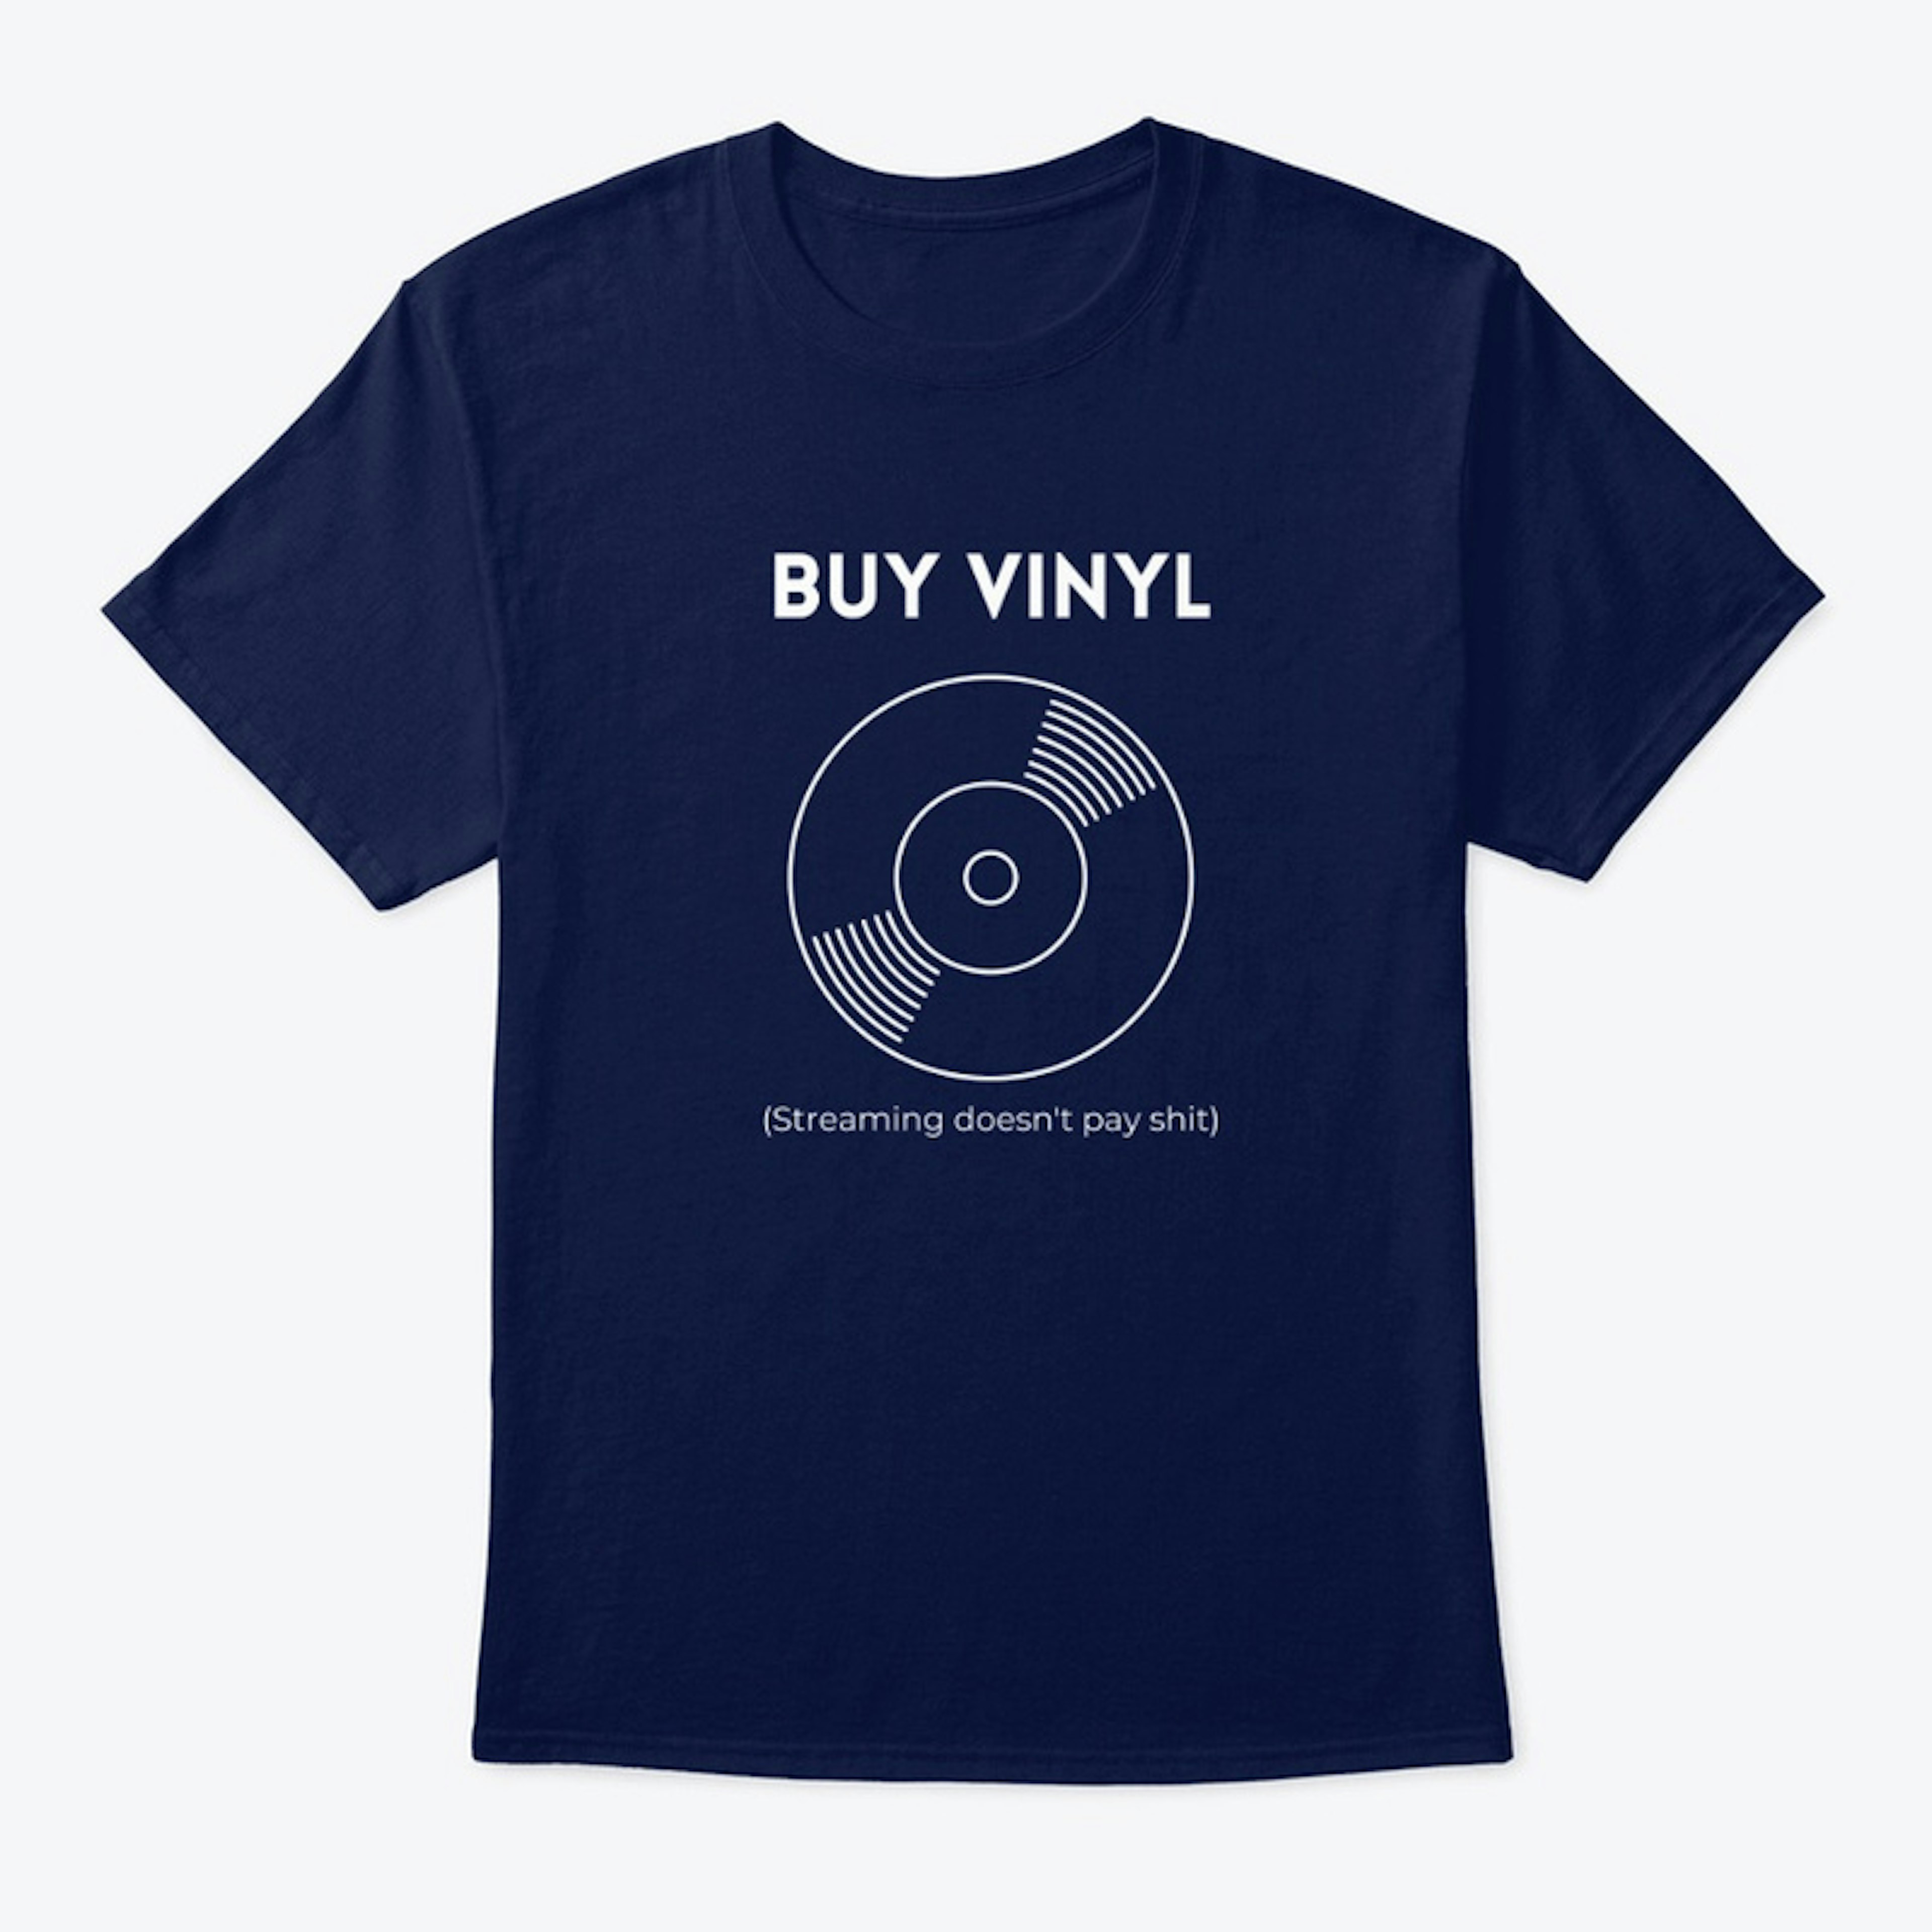 Buy Vinyl